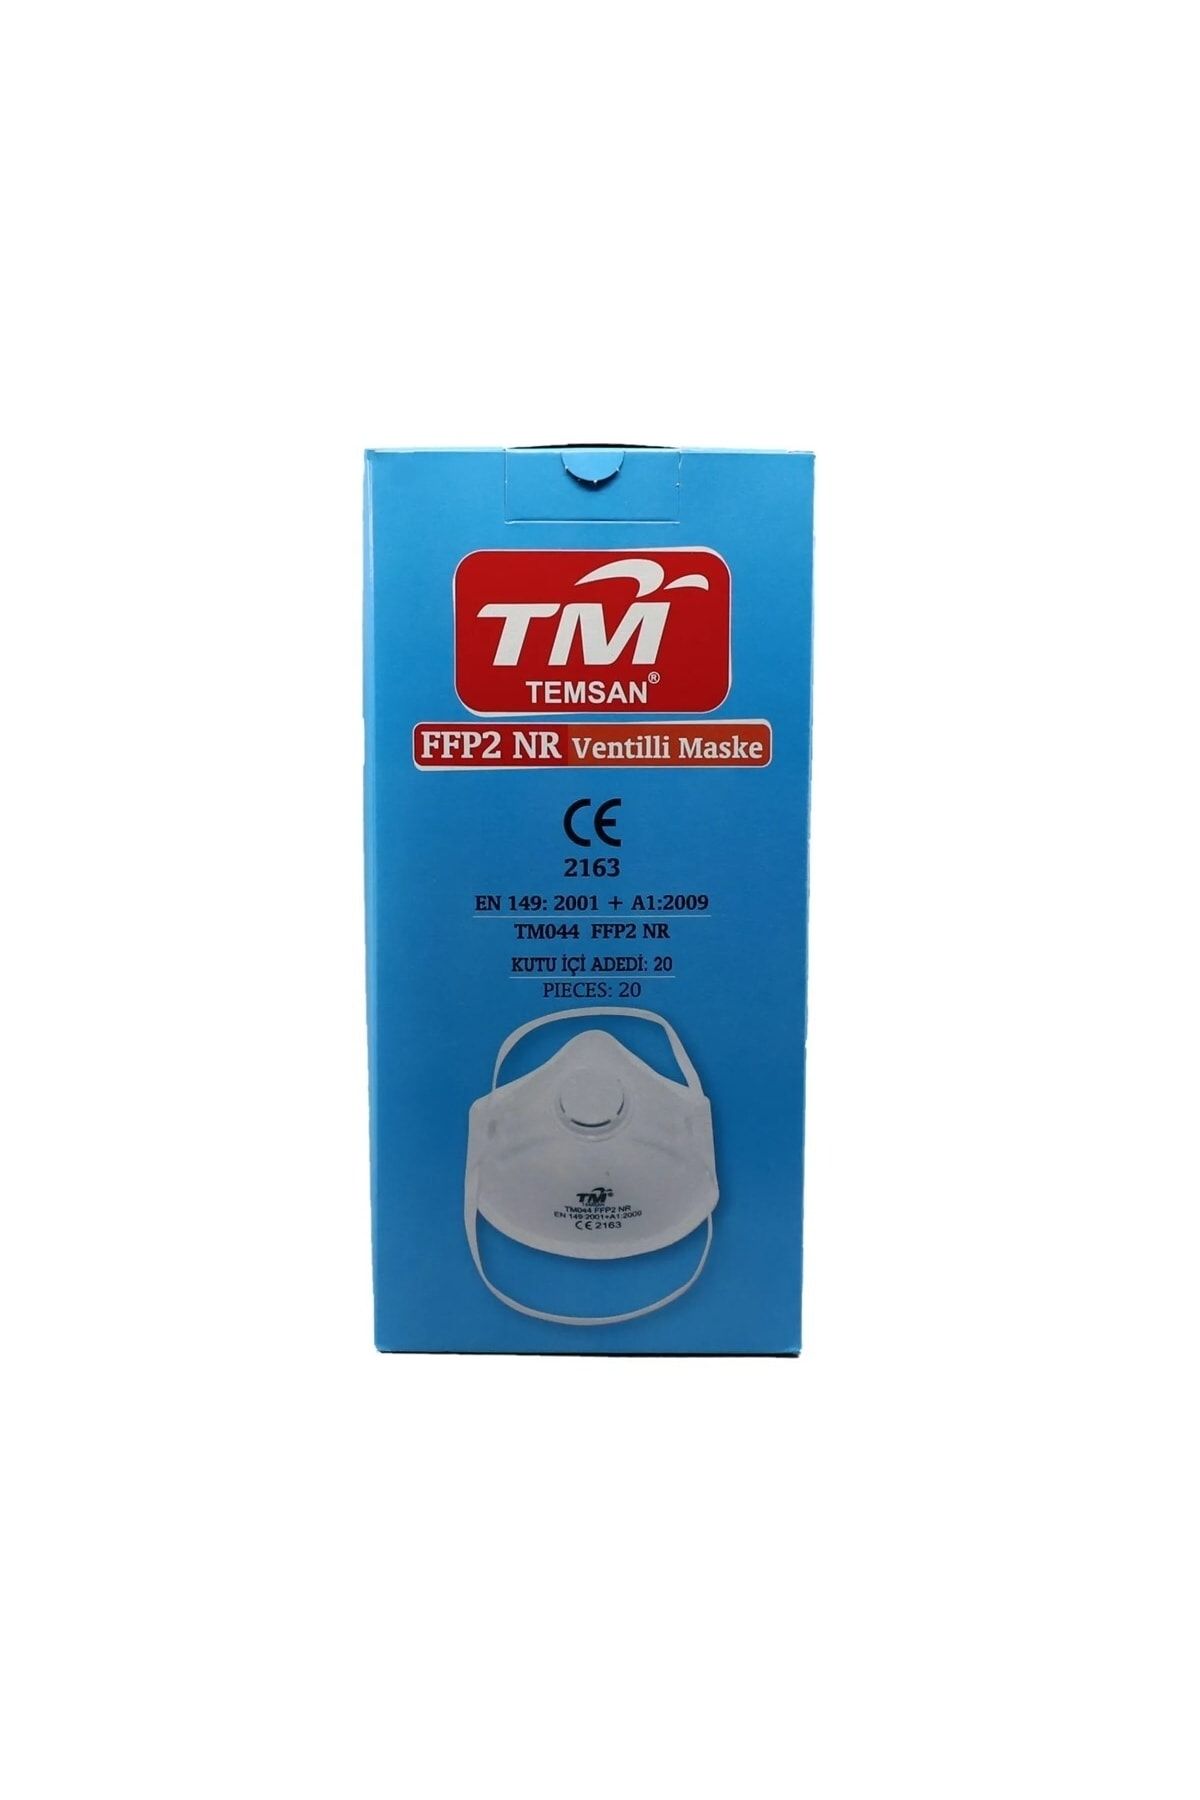 TM Temsan Ery Iş Güvenliği Temsan Ffp2 Toz Maskesi 20'li